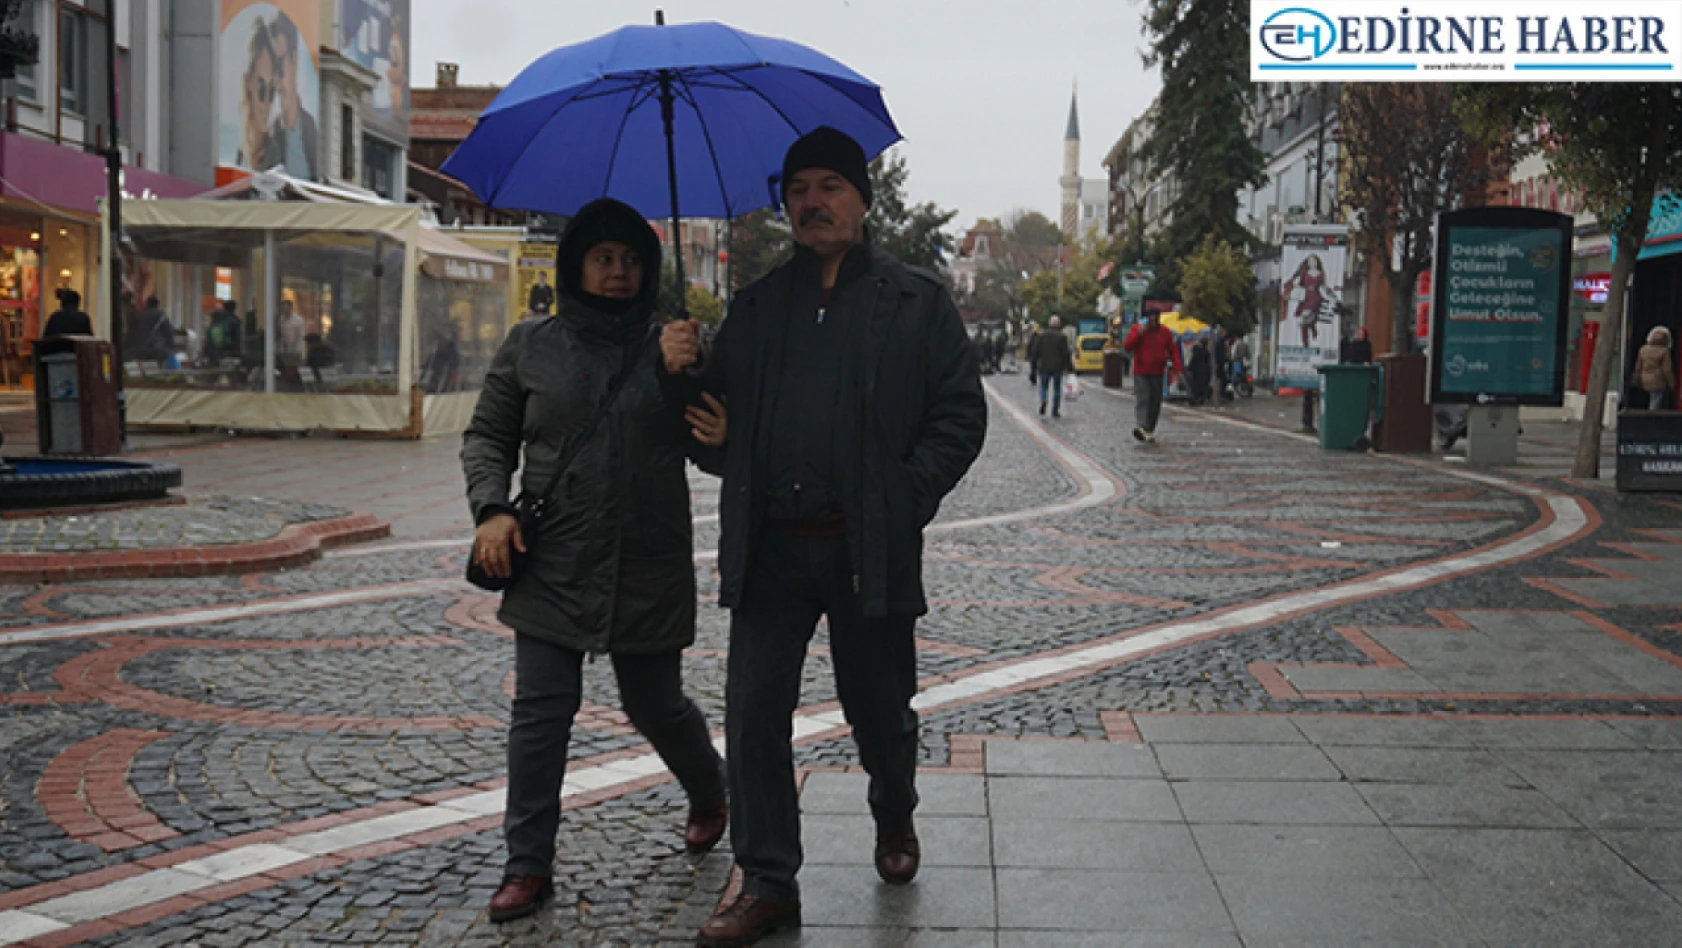 Edirne'de yağmur geçişleri yaşandı